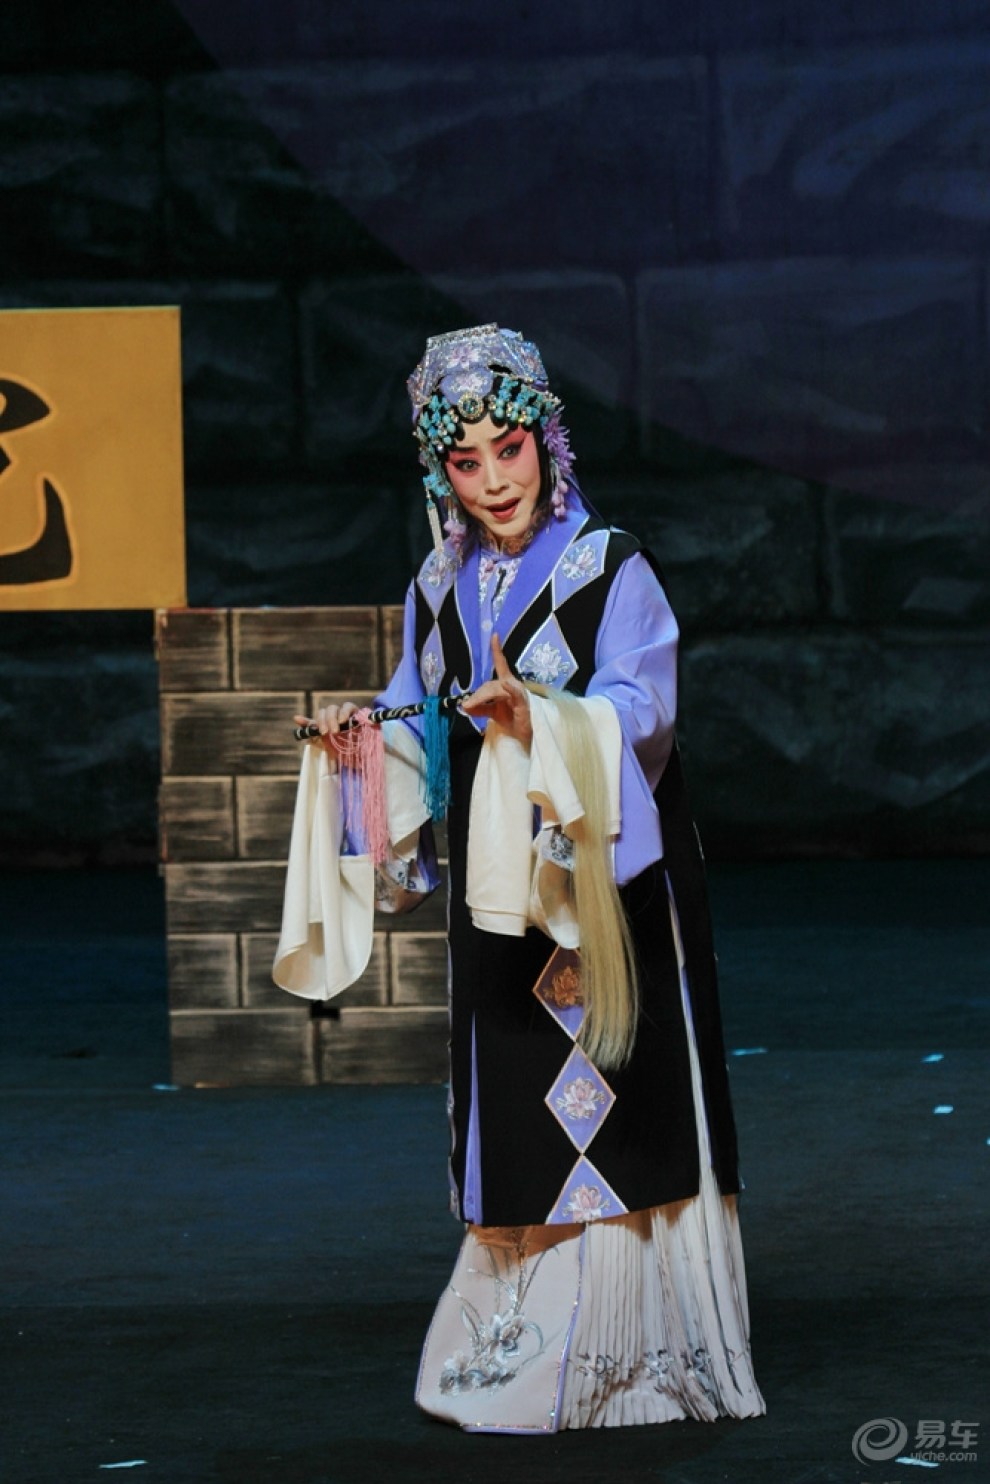 天津市青年京剧团在天津中华剧院上演京剧《墙头马上》剧照